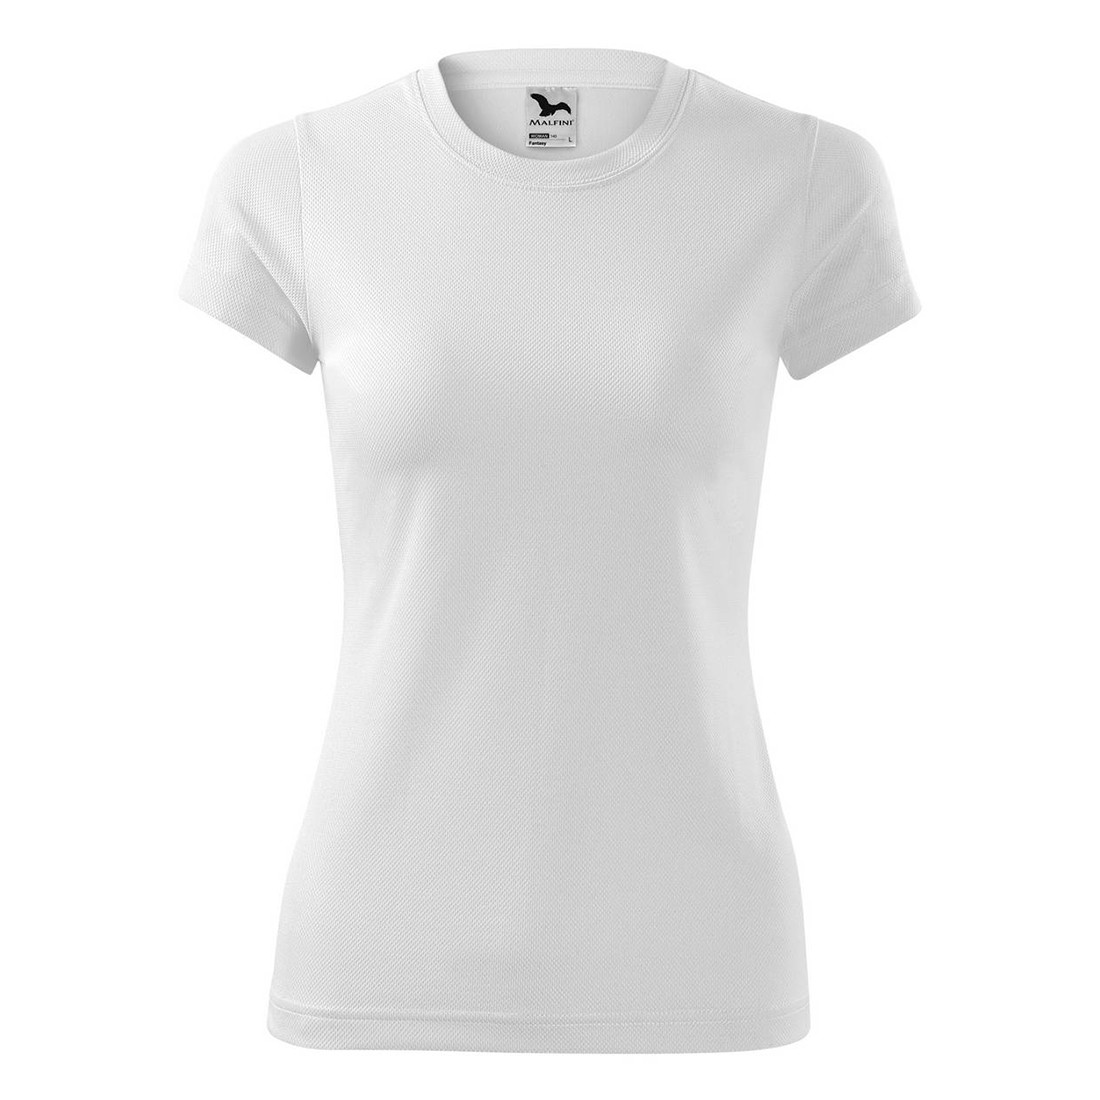 Camiseta mujer FANTASY - Ropa de protección